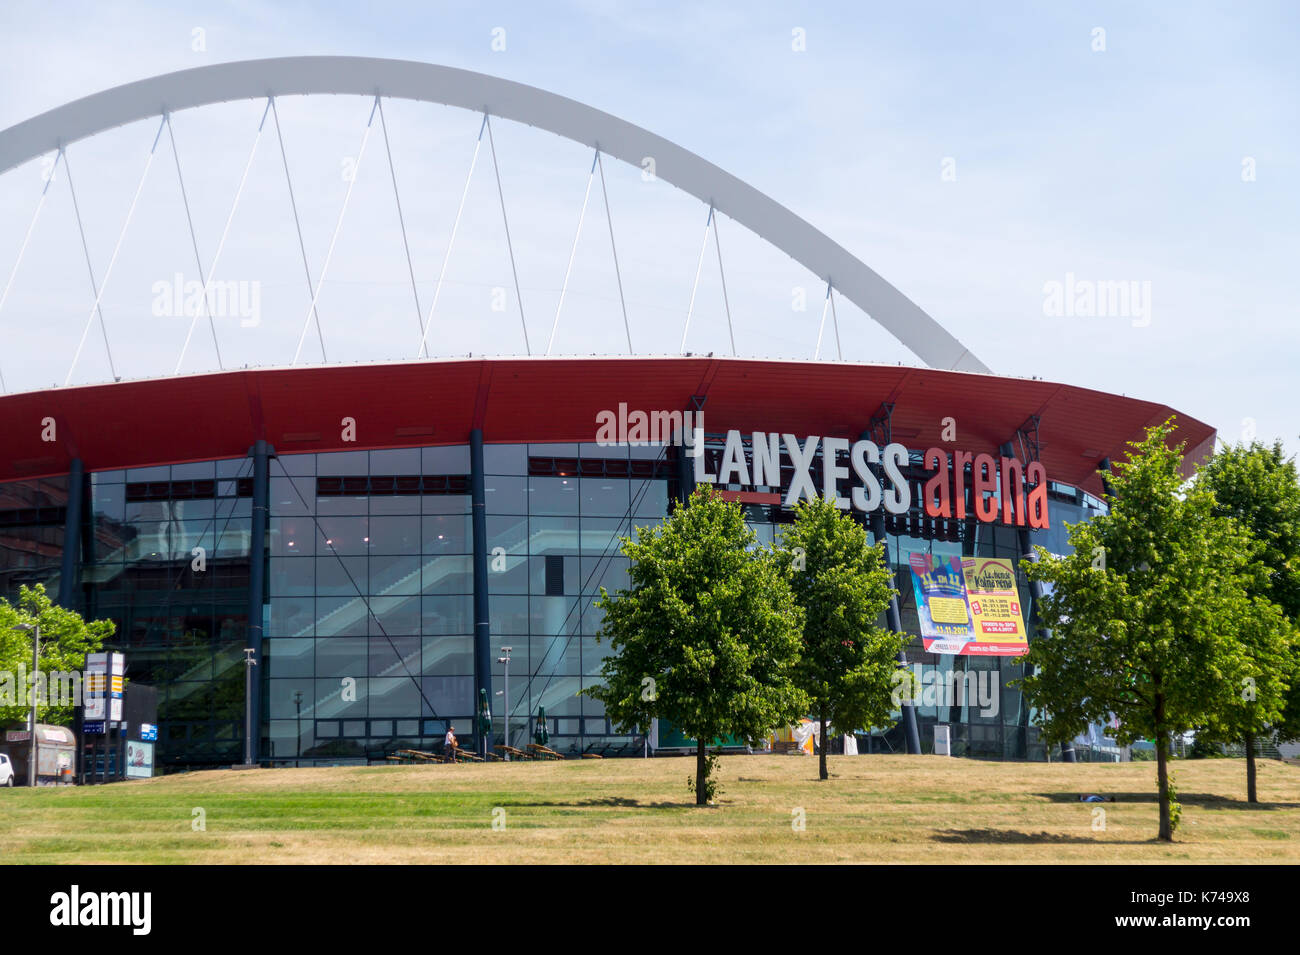 Colonia, Germania - 4 luglio 2017: Lanxess Arena Foto Stock